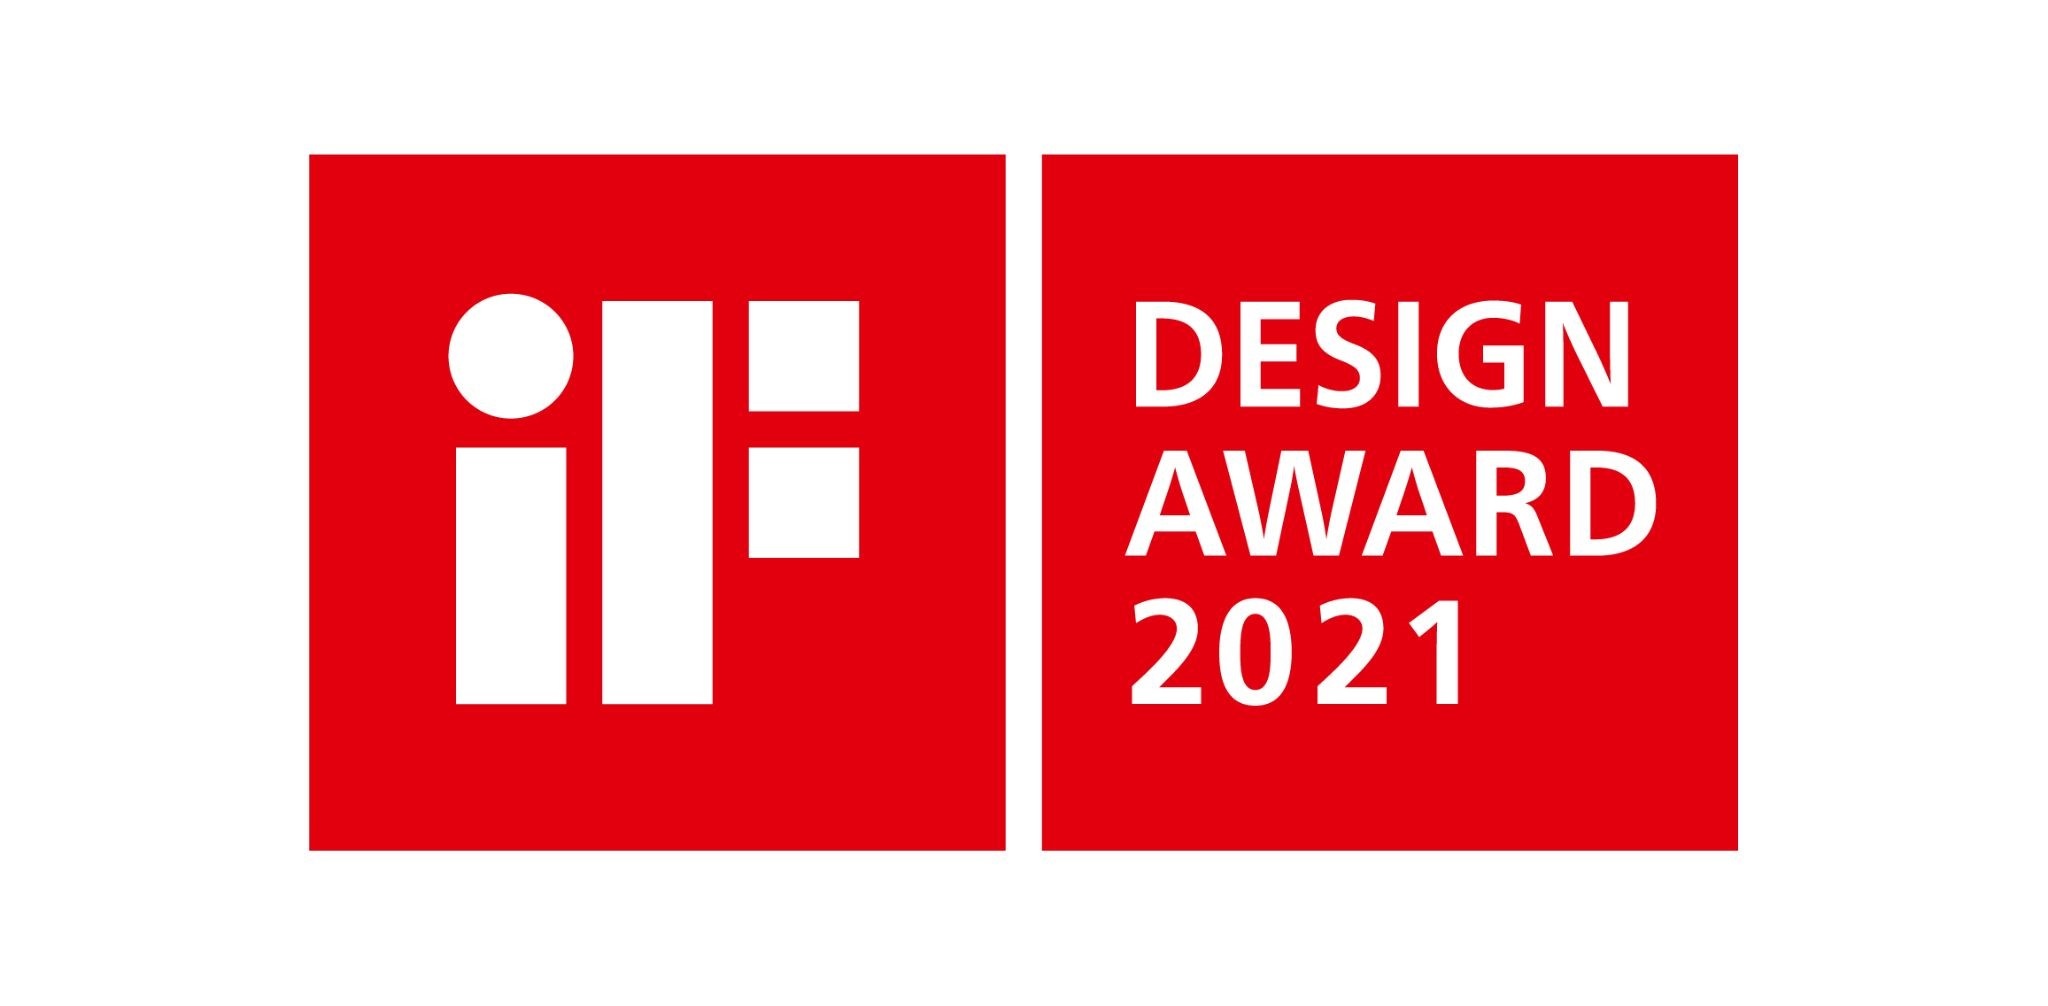 โดดเด่นด้วยดีไซน์… โตโต้ ชนะ iF Design Awards 2021 มากถึง 6 รางวัล